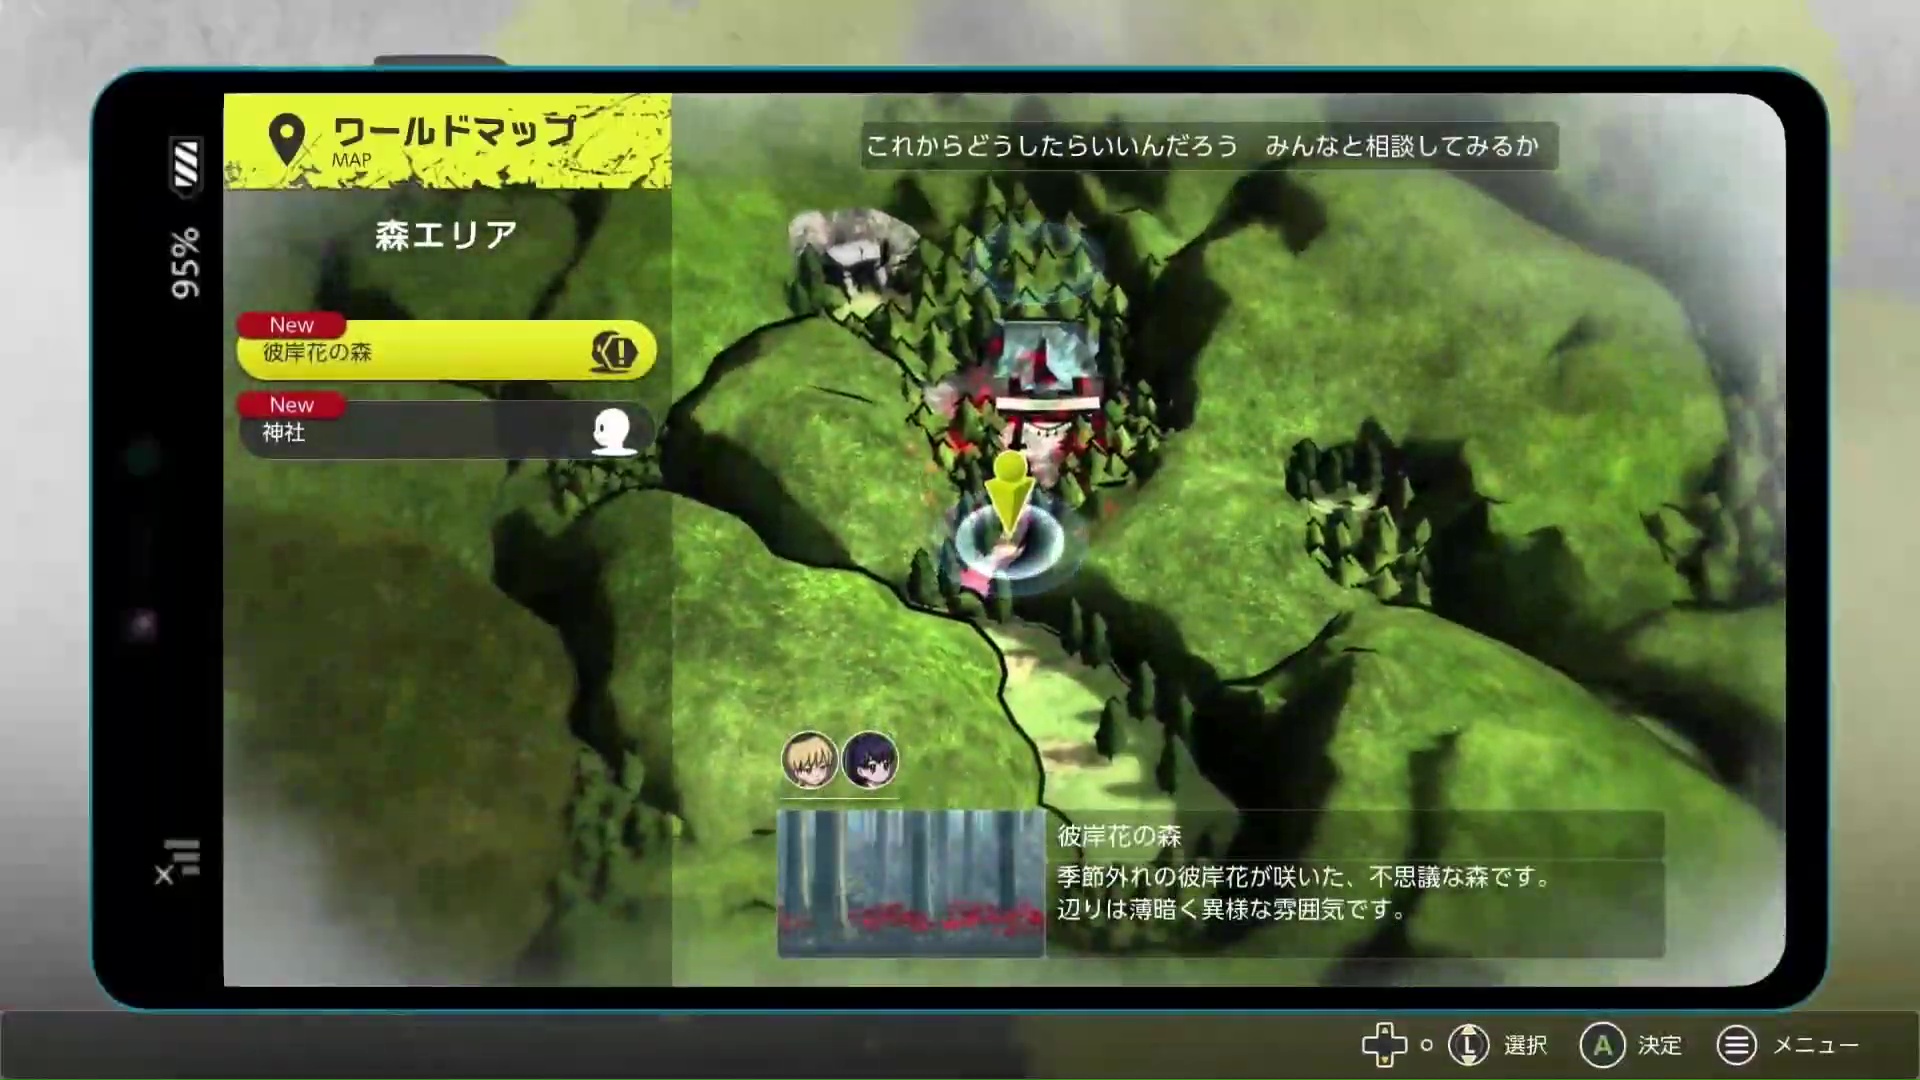 Digimon Con 2023 ocorre em fevereiro com livestream aberta ao